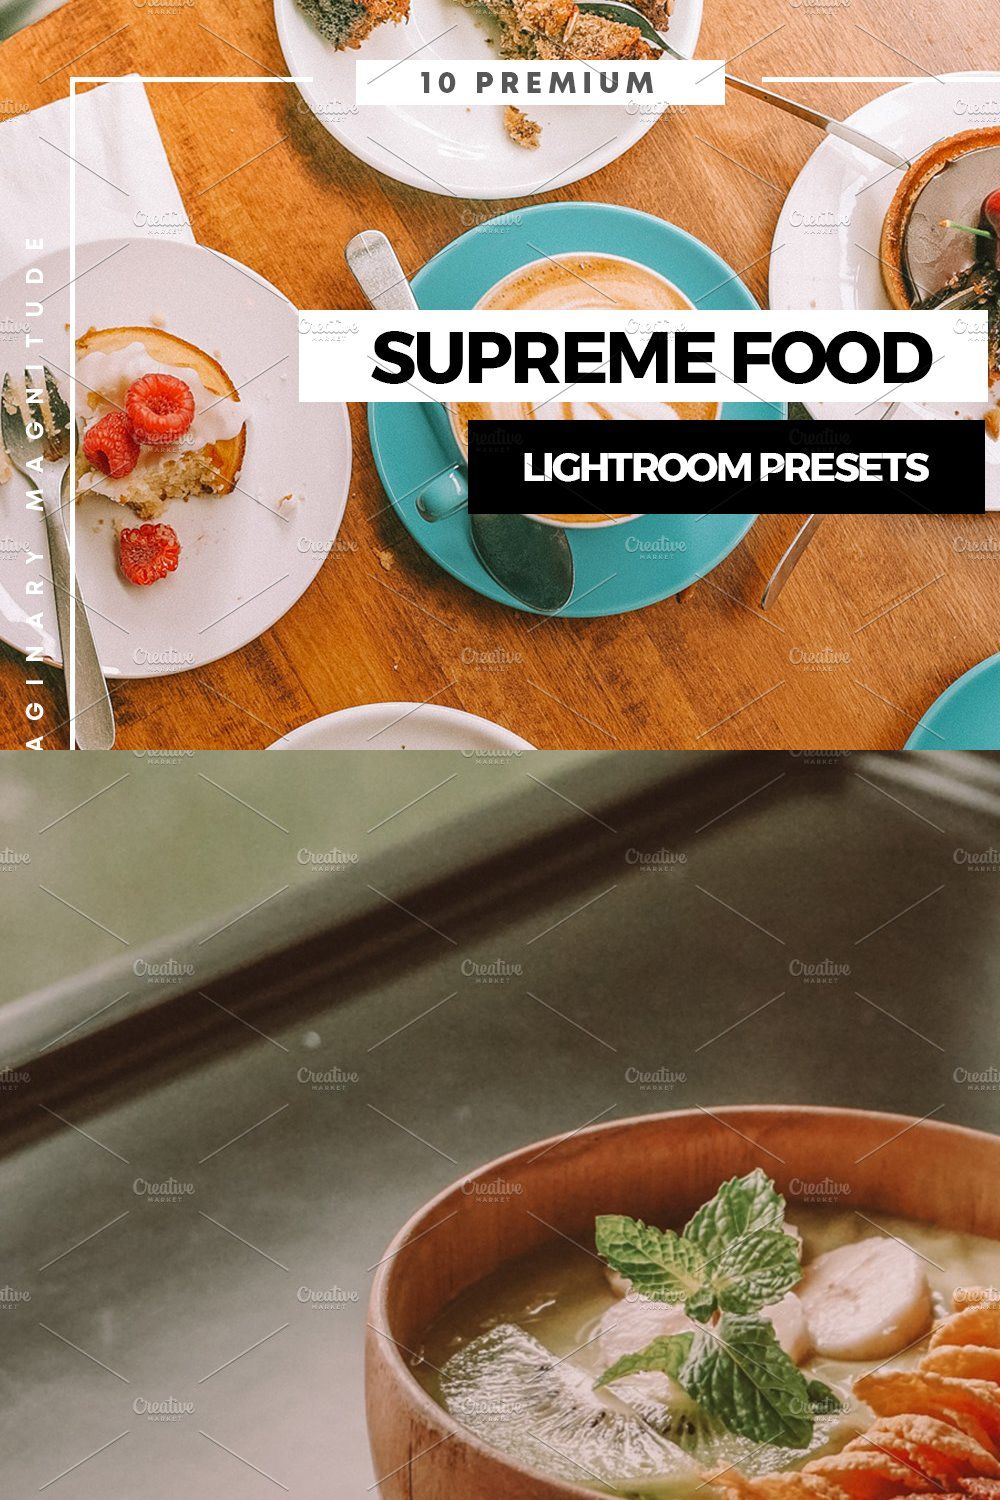 Supreme Food Lightroom Presets pinterest preview image.